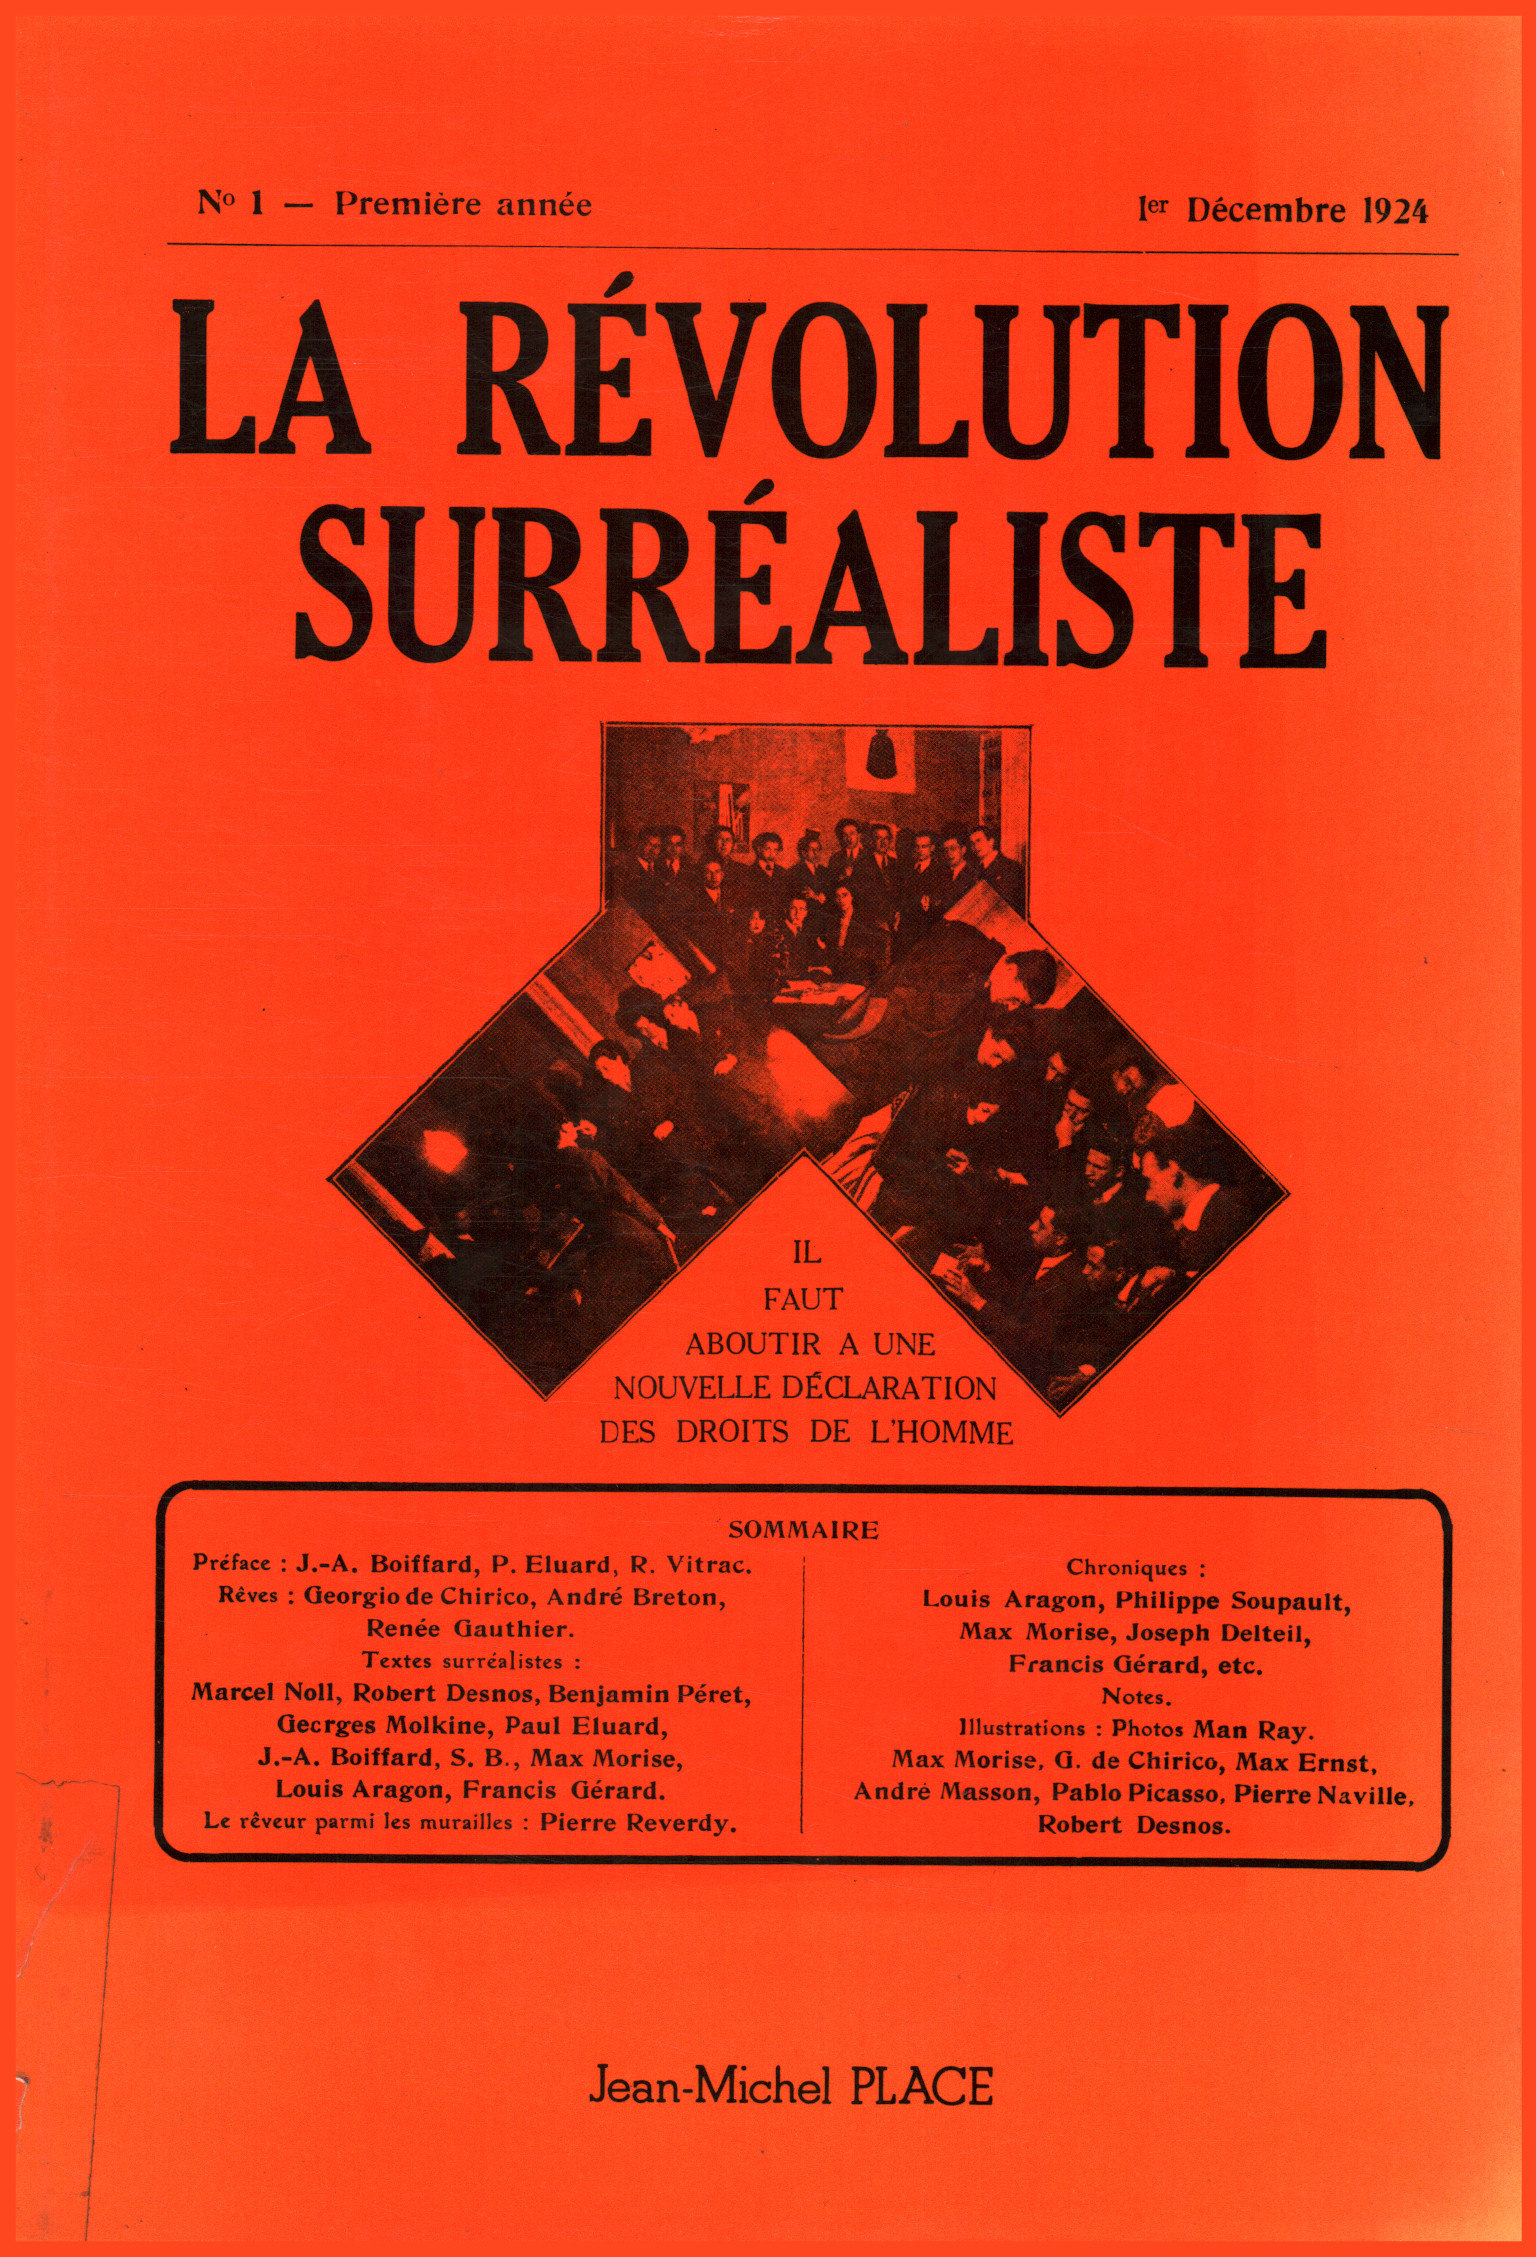 La révolution surréaliste. Collection%2,La Révolution Surréaliste. Collection%2,La Révolution Surréaliste. Collecte%2